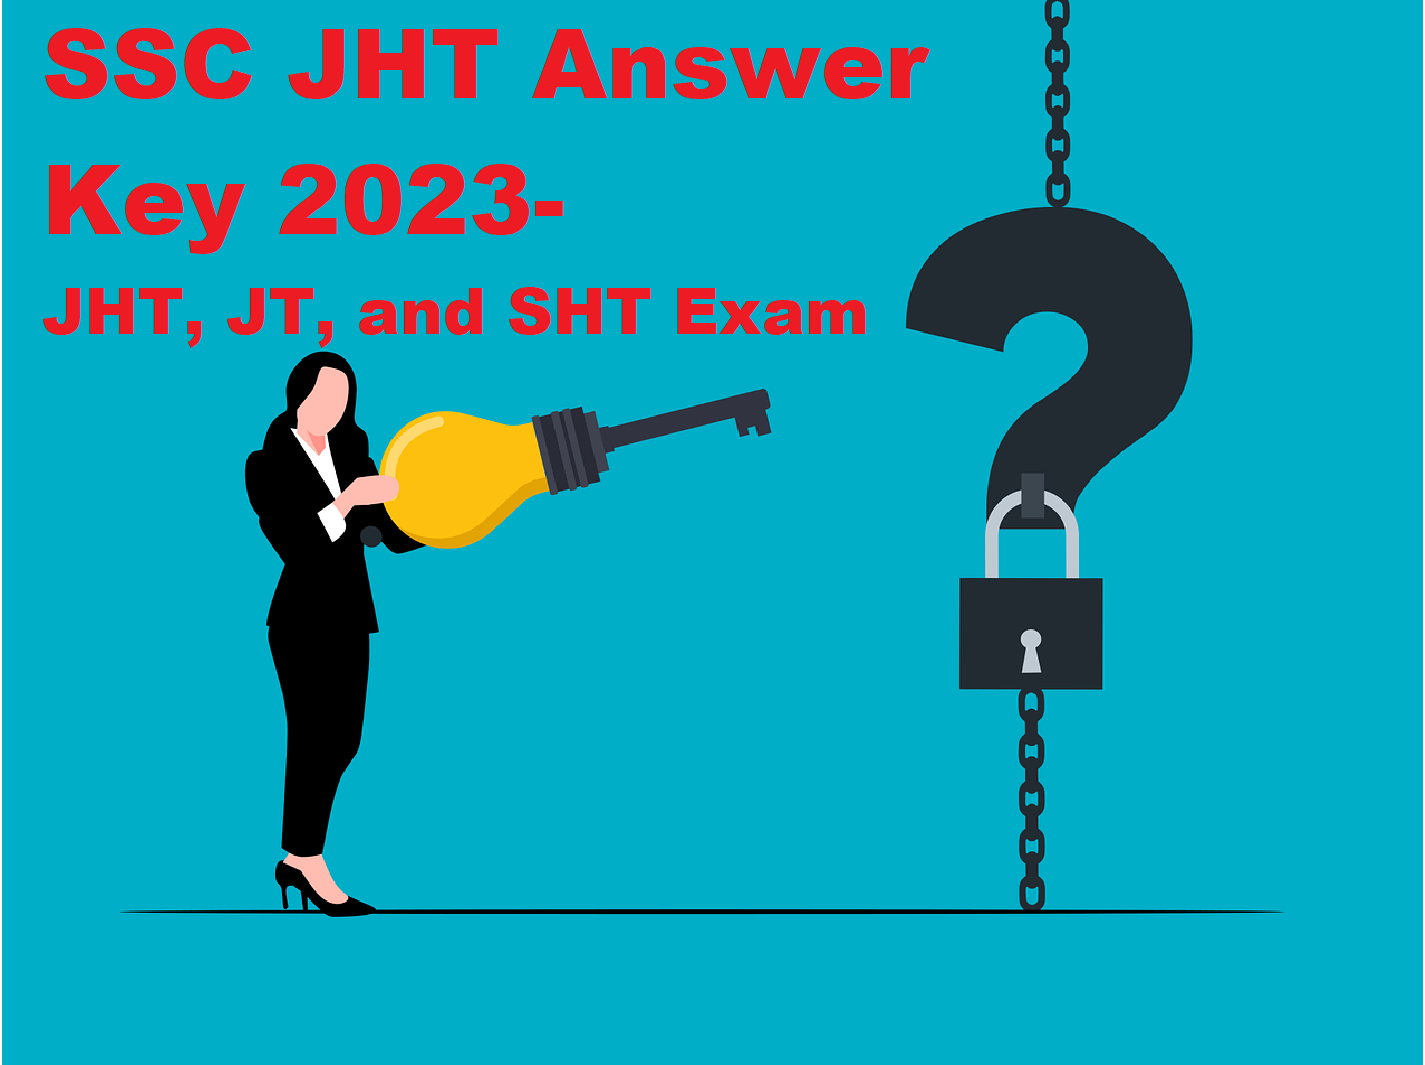 SSC JHT Answer Key